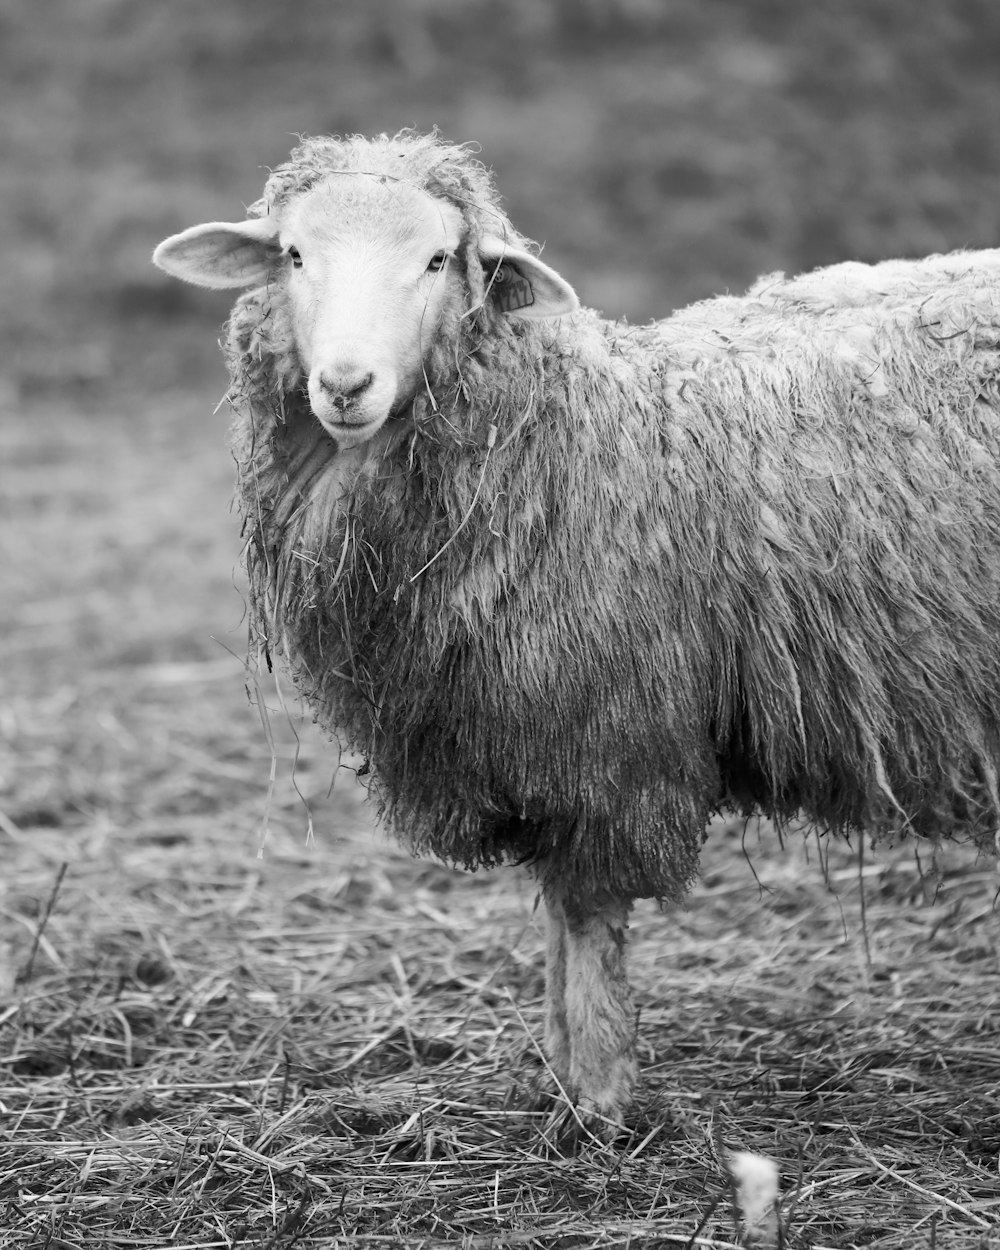 Photographie sélective en niveaux de gris de l’agneau